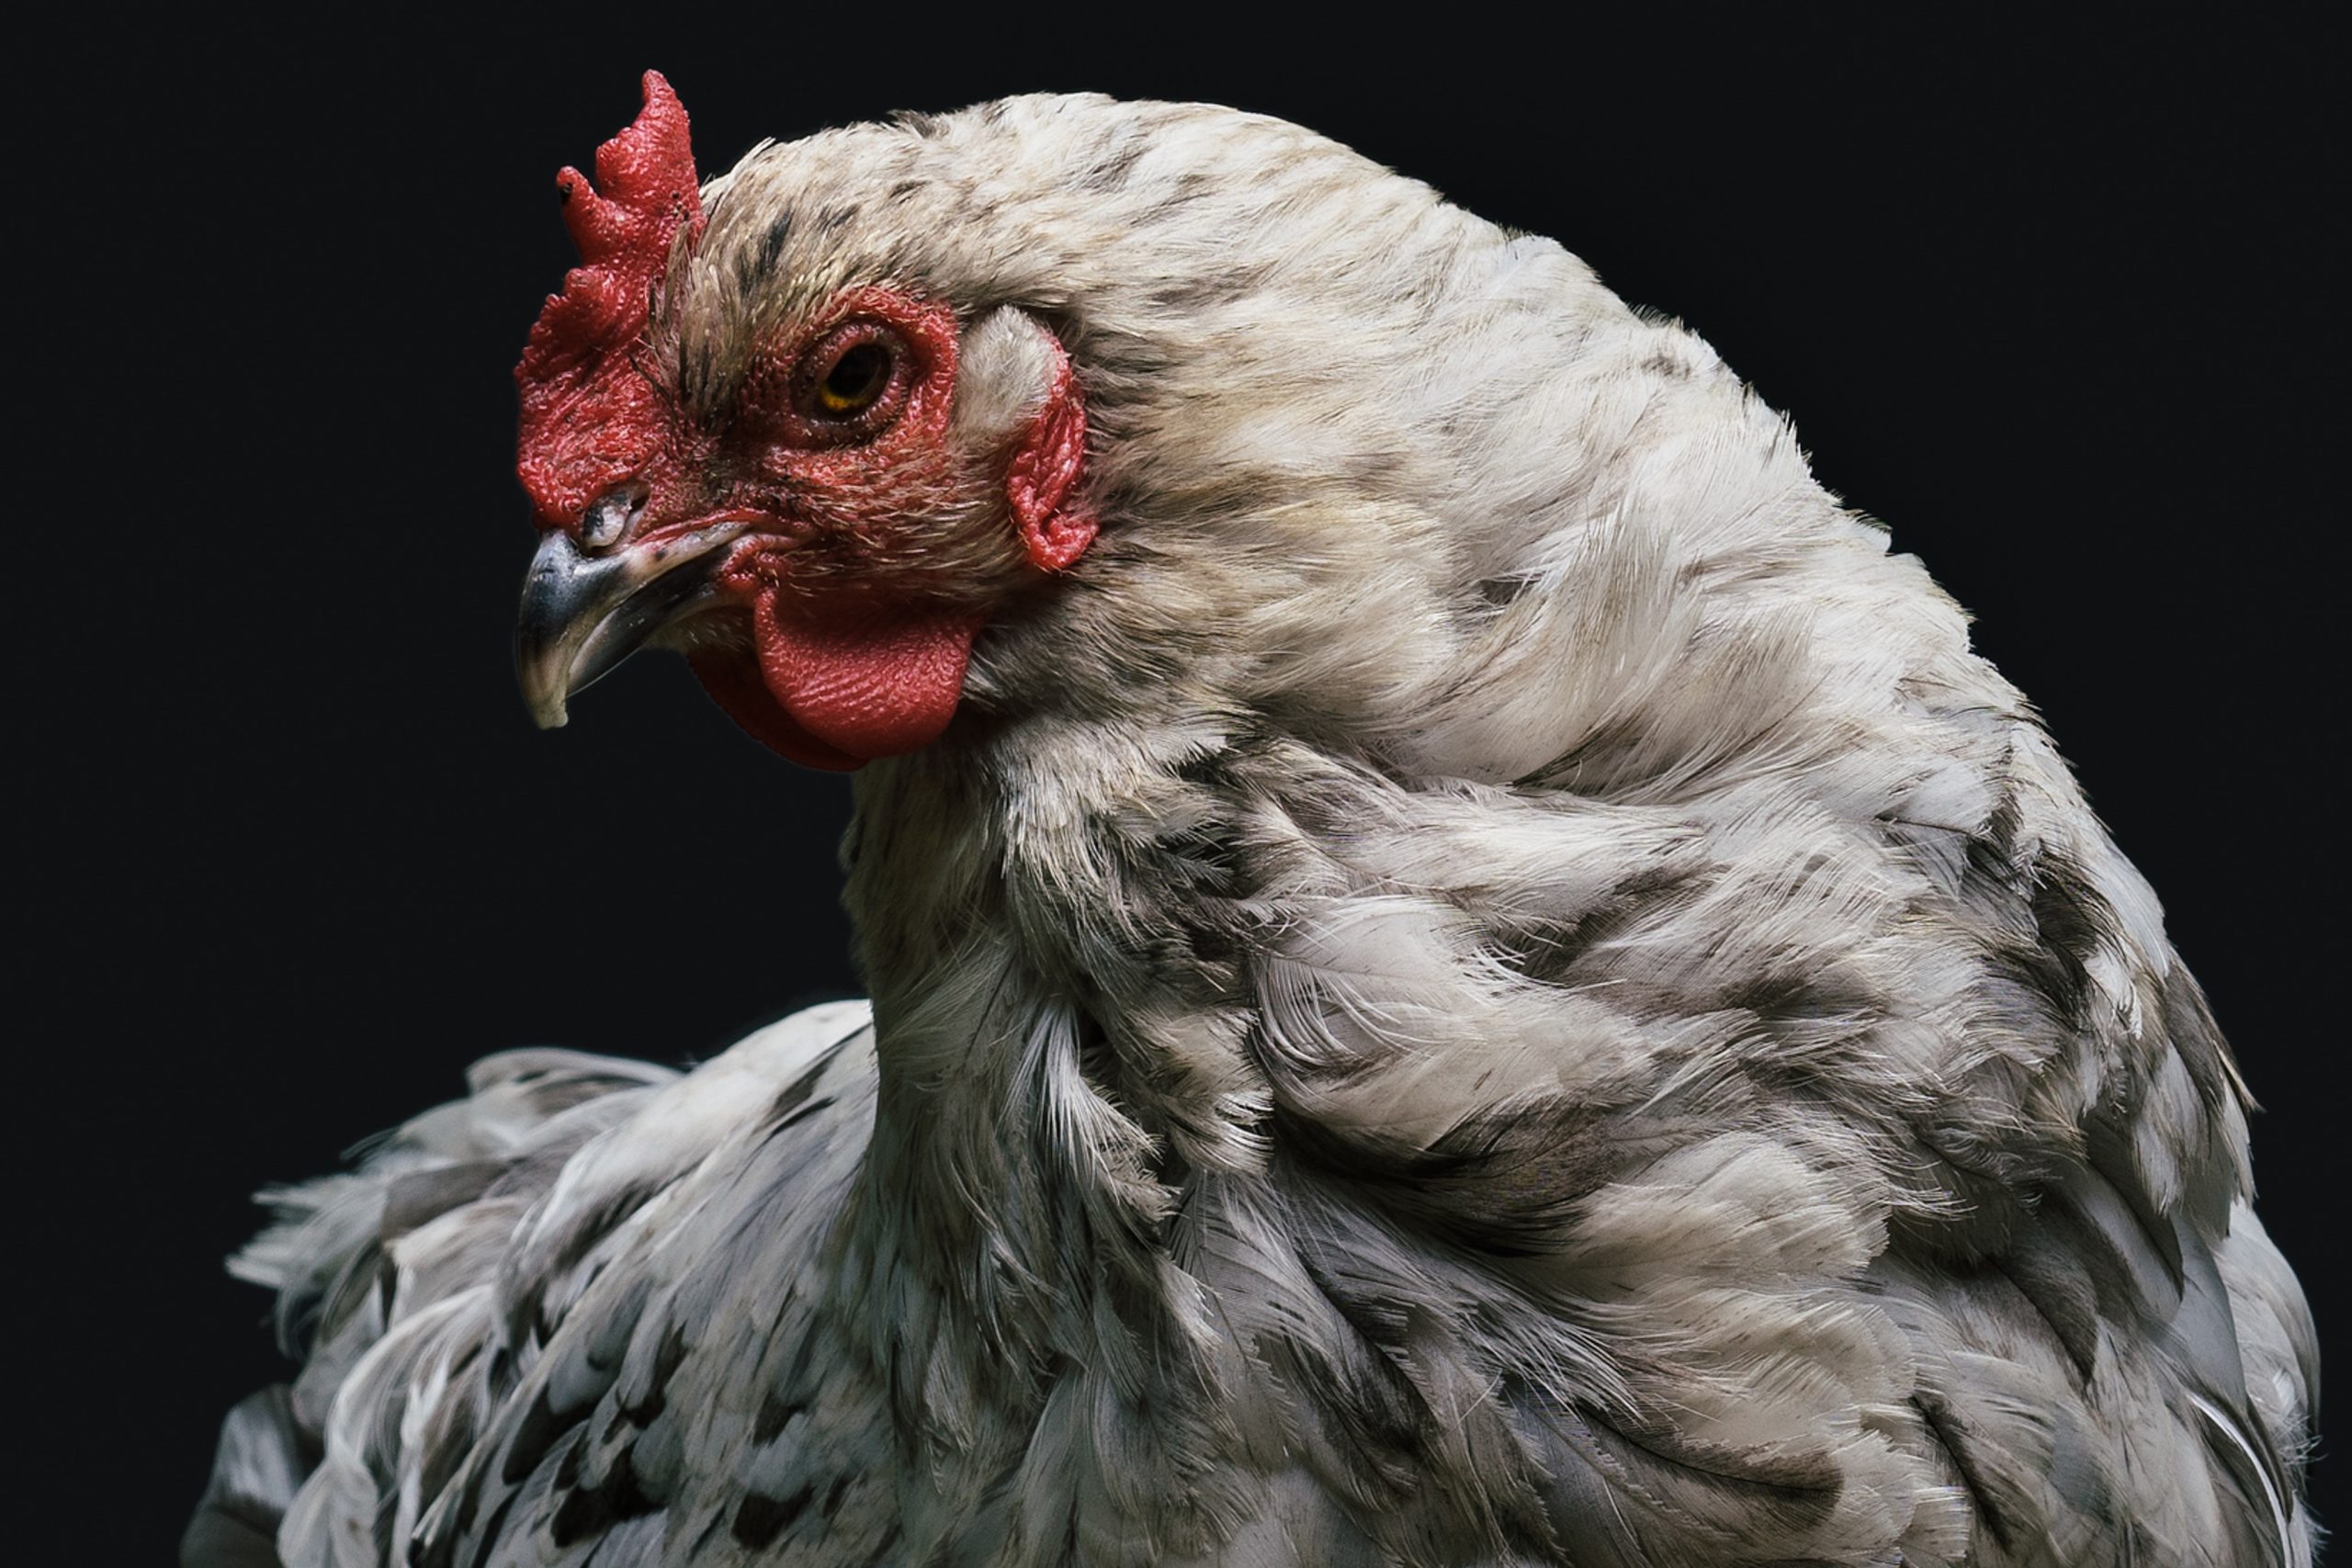 I ladri staccano la corrente nello stabilimento: morti 240mila polli Fileni